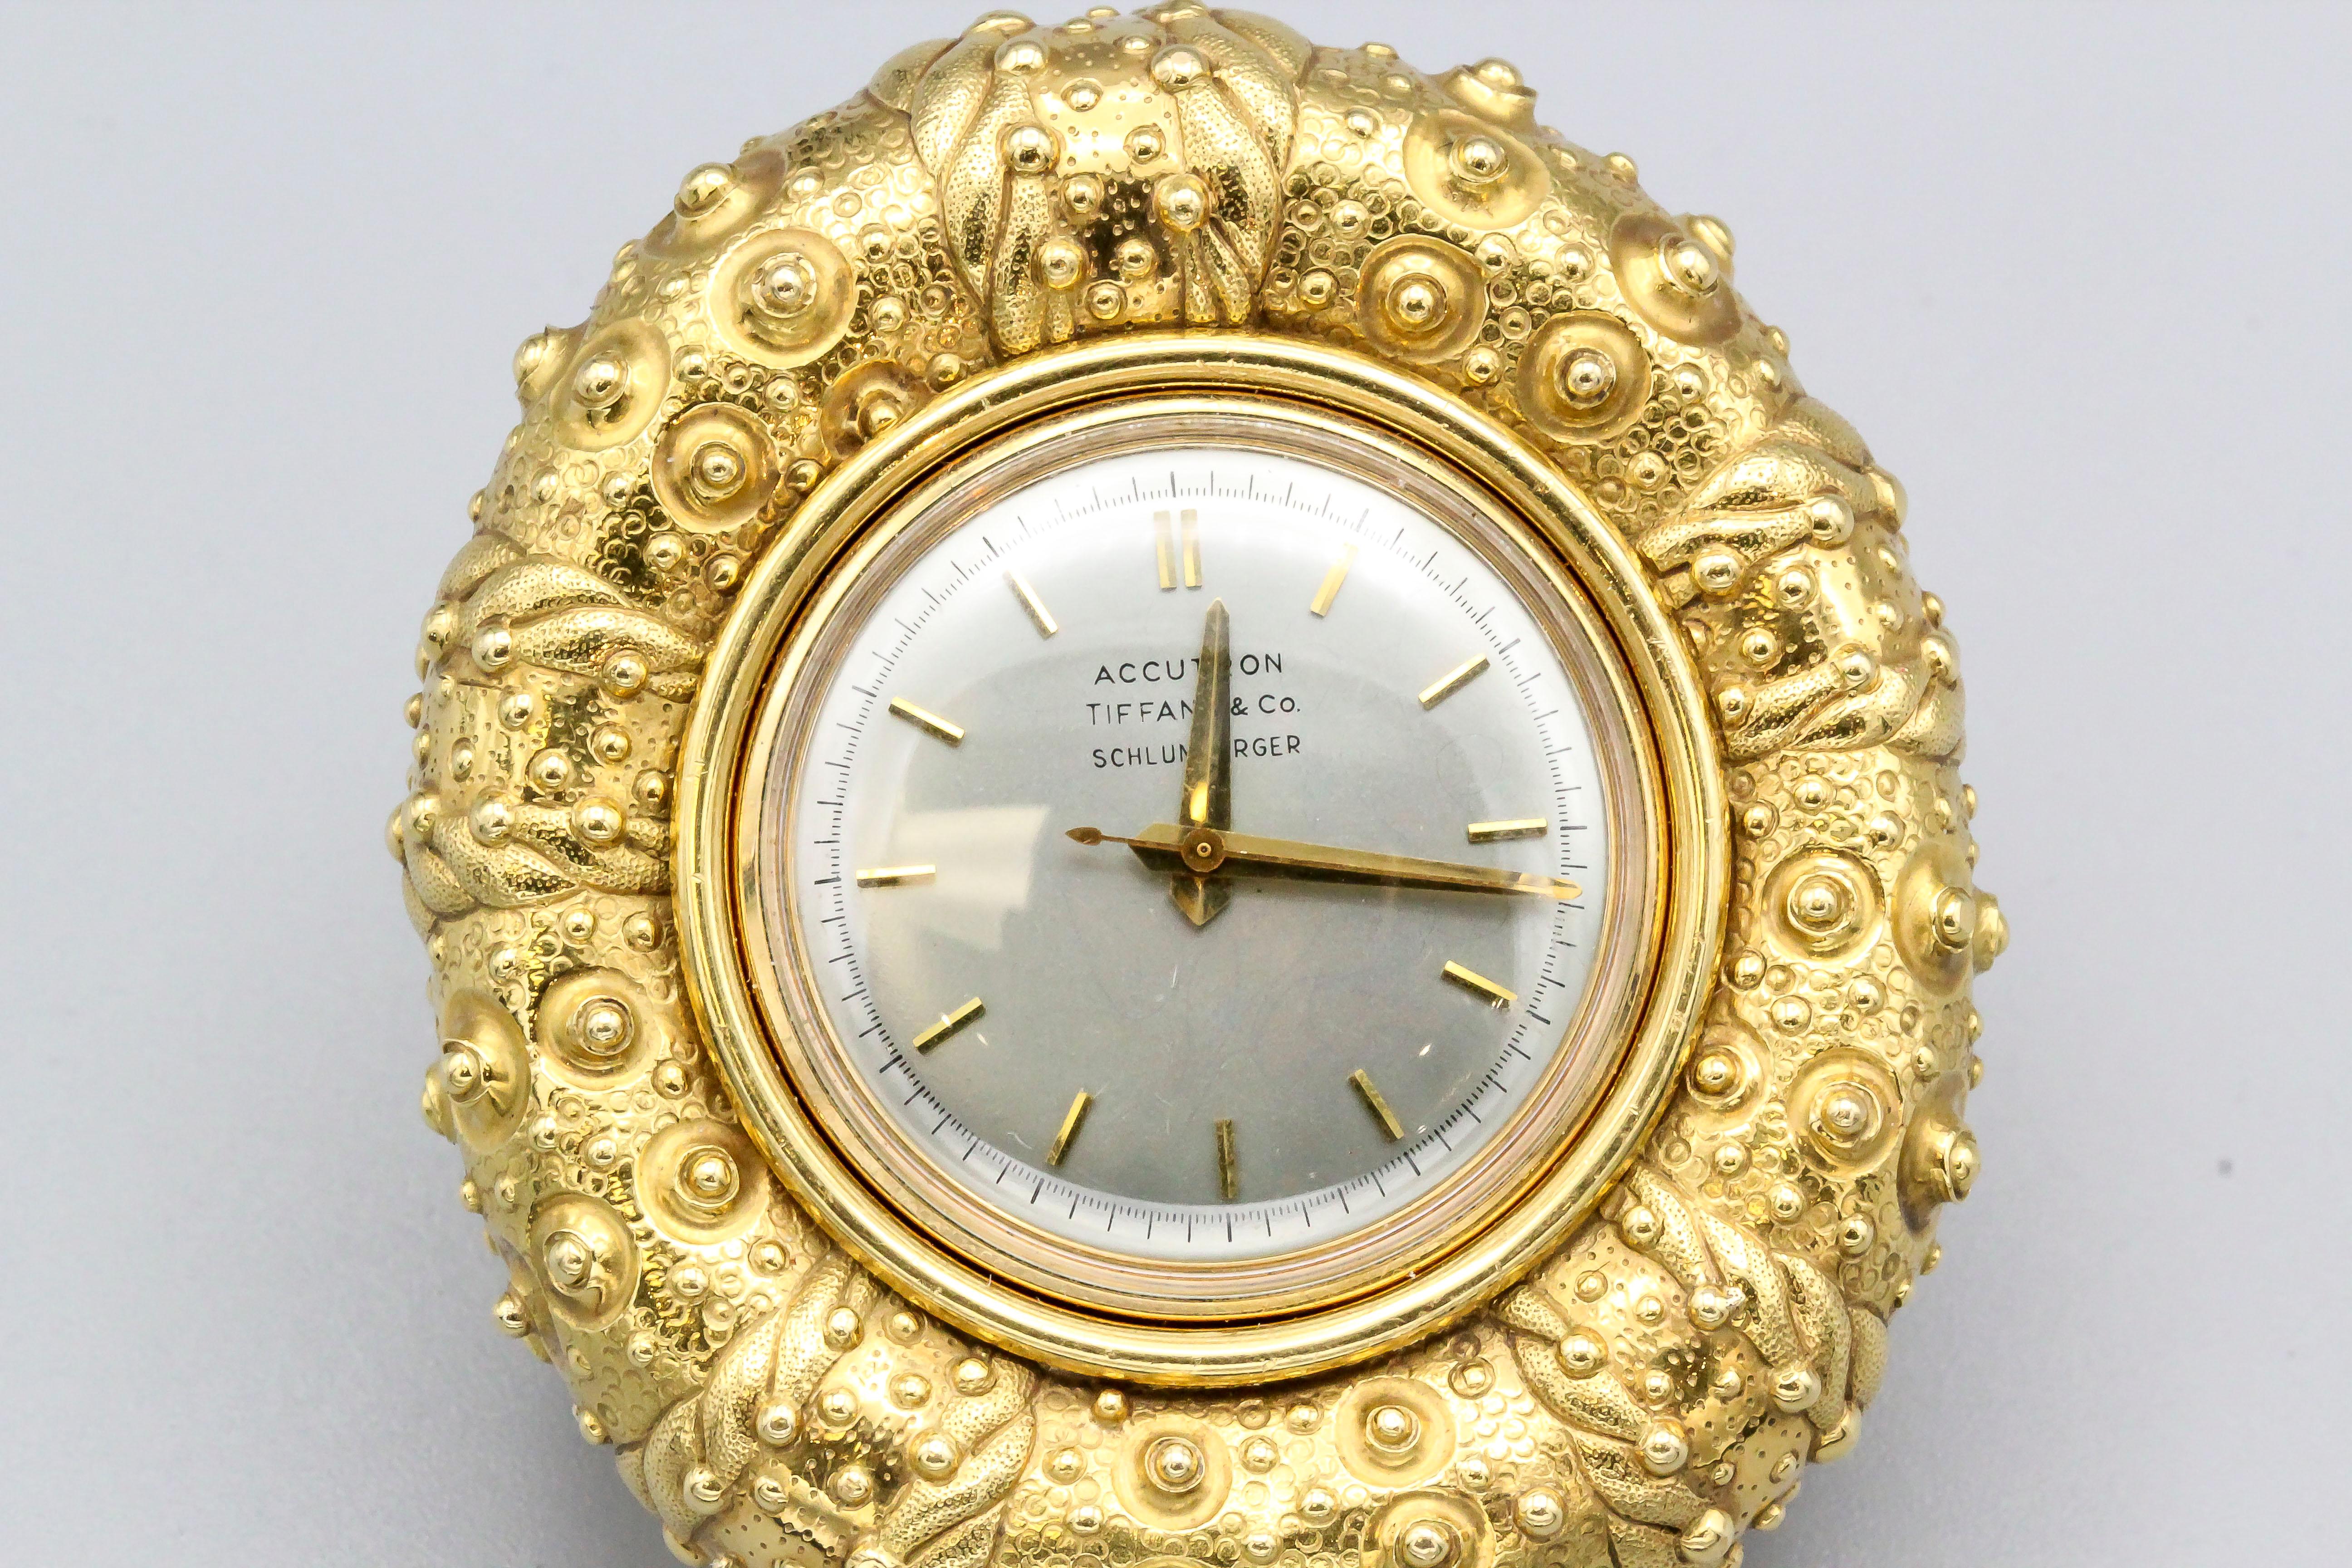 Elegante Uhr aus 18 Karat Gelbgold von Tiffany & Co. Schlumberger. Er ähnelt einem Seeigel. Bulova Accutron Uhrwerk in ausgezeichnetem Zustand.

Punzierungen: Tiffany & Co., Schlumberger, Bulova Accutron. Rückseite der Uhr: Bulova, 18KT Gold,